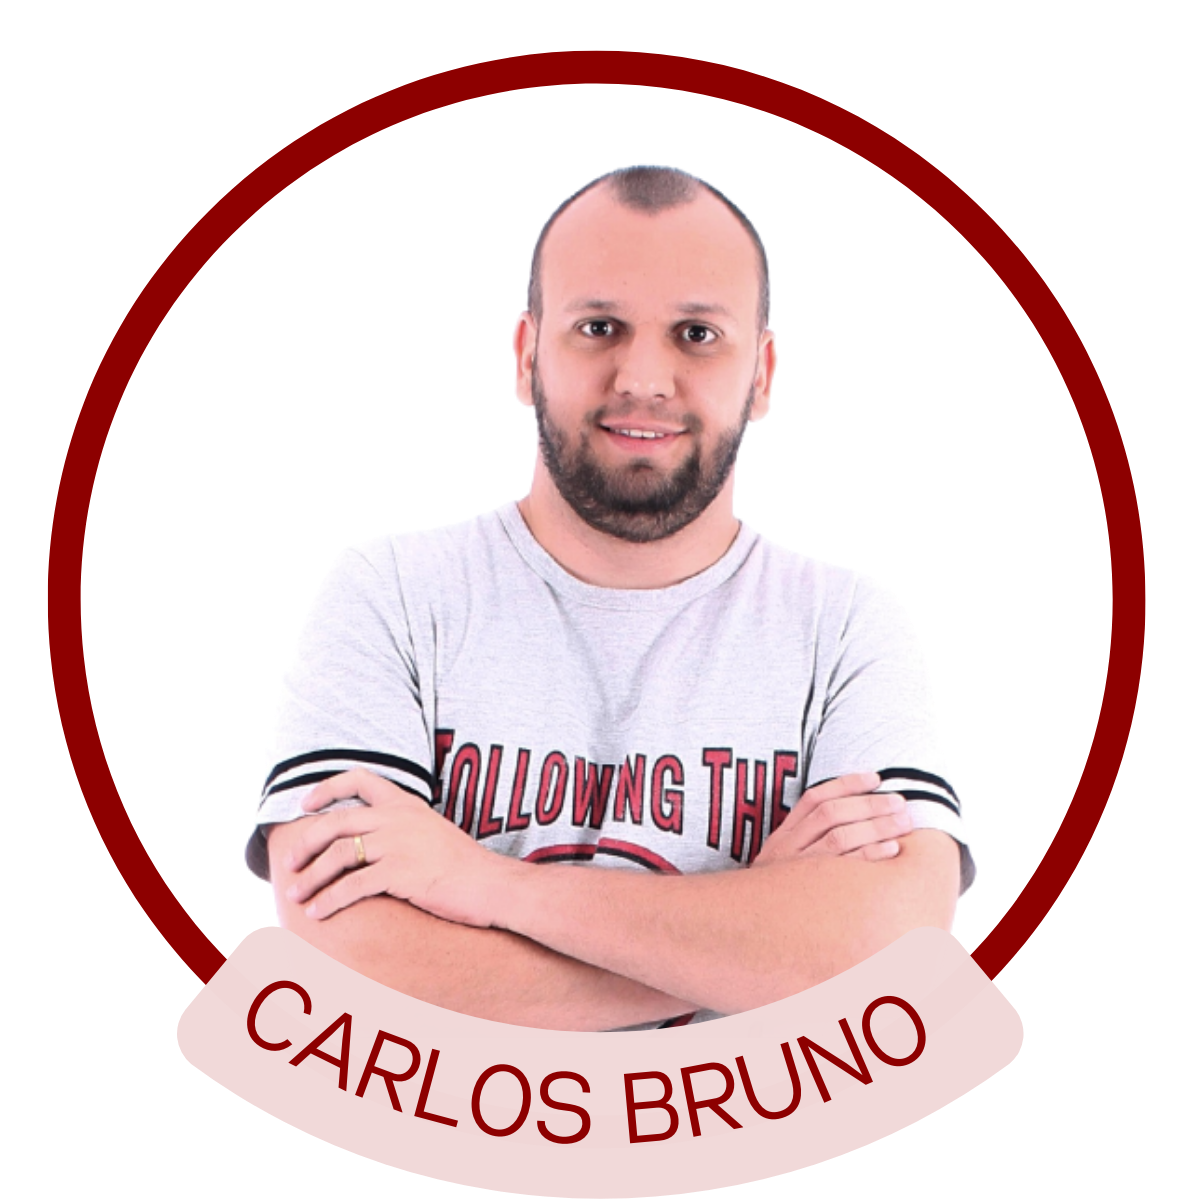 Carlos Bruno Pedrosa